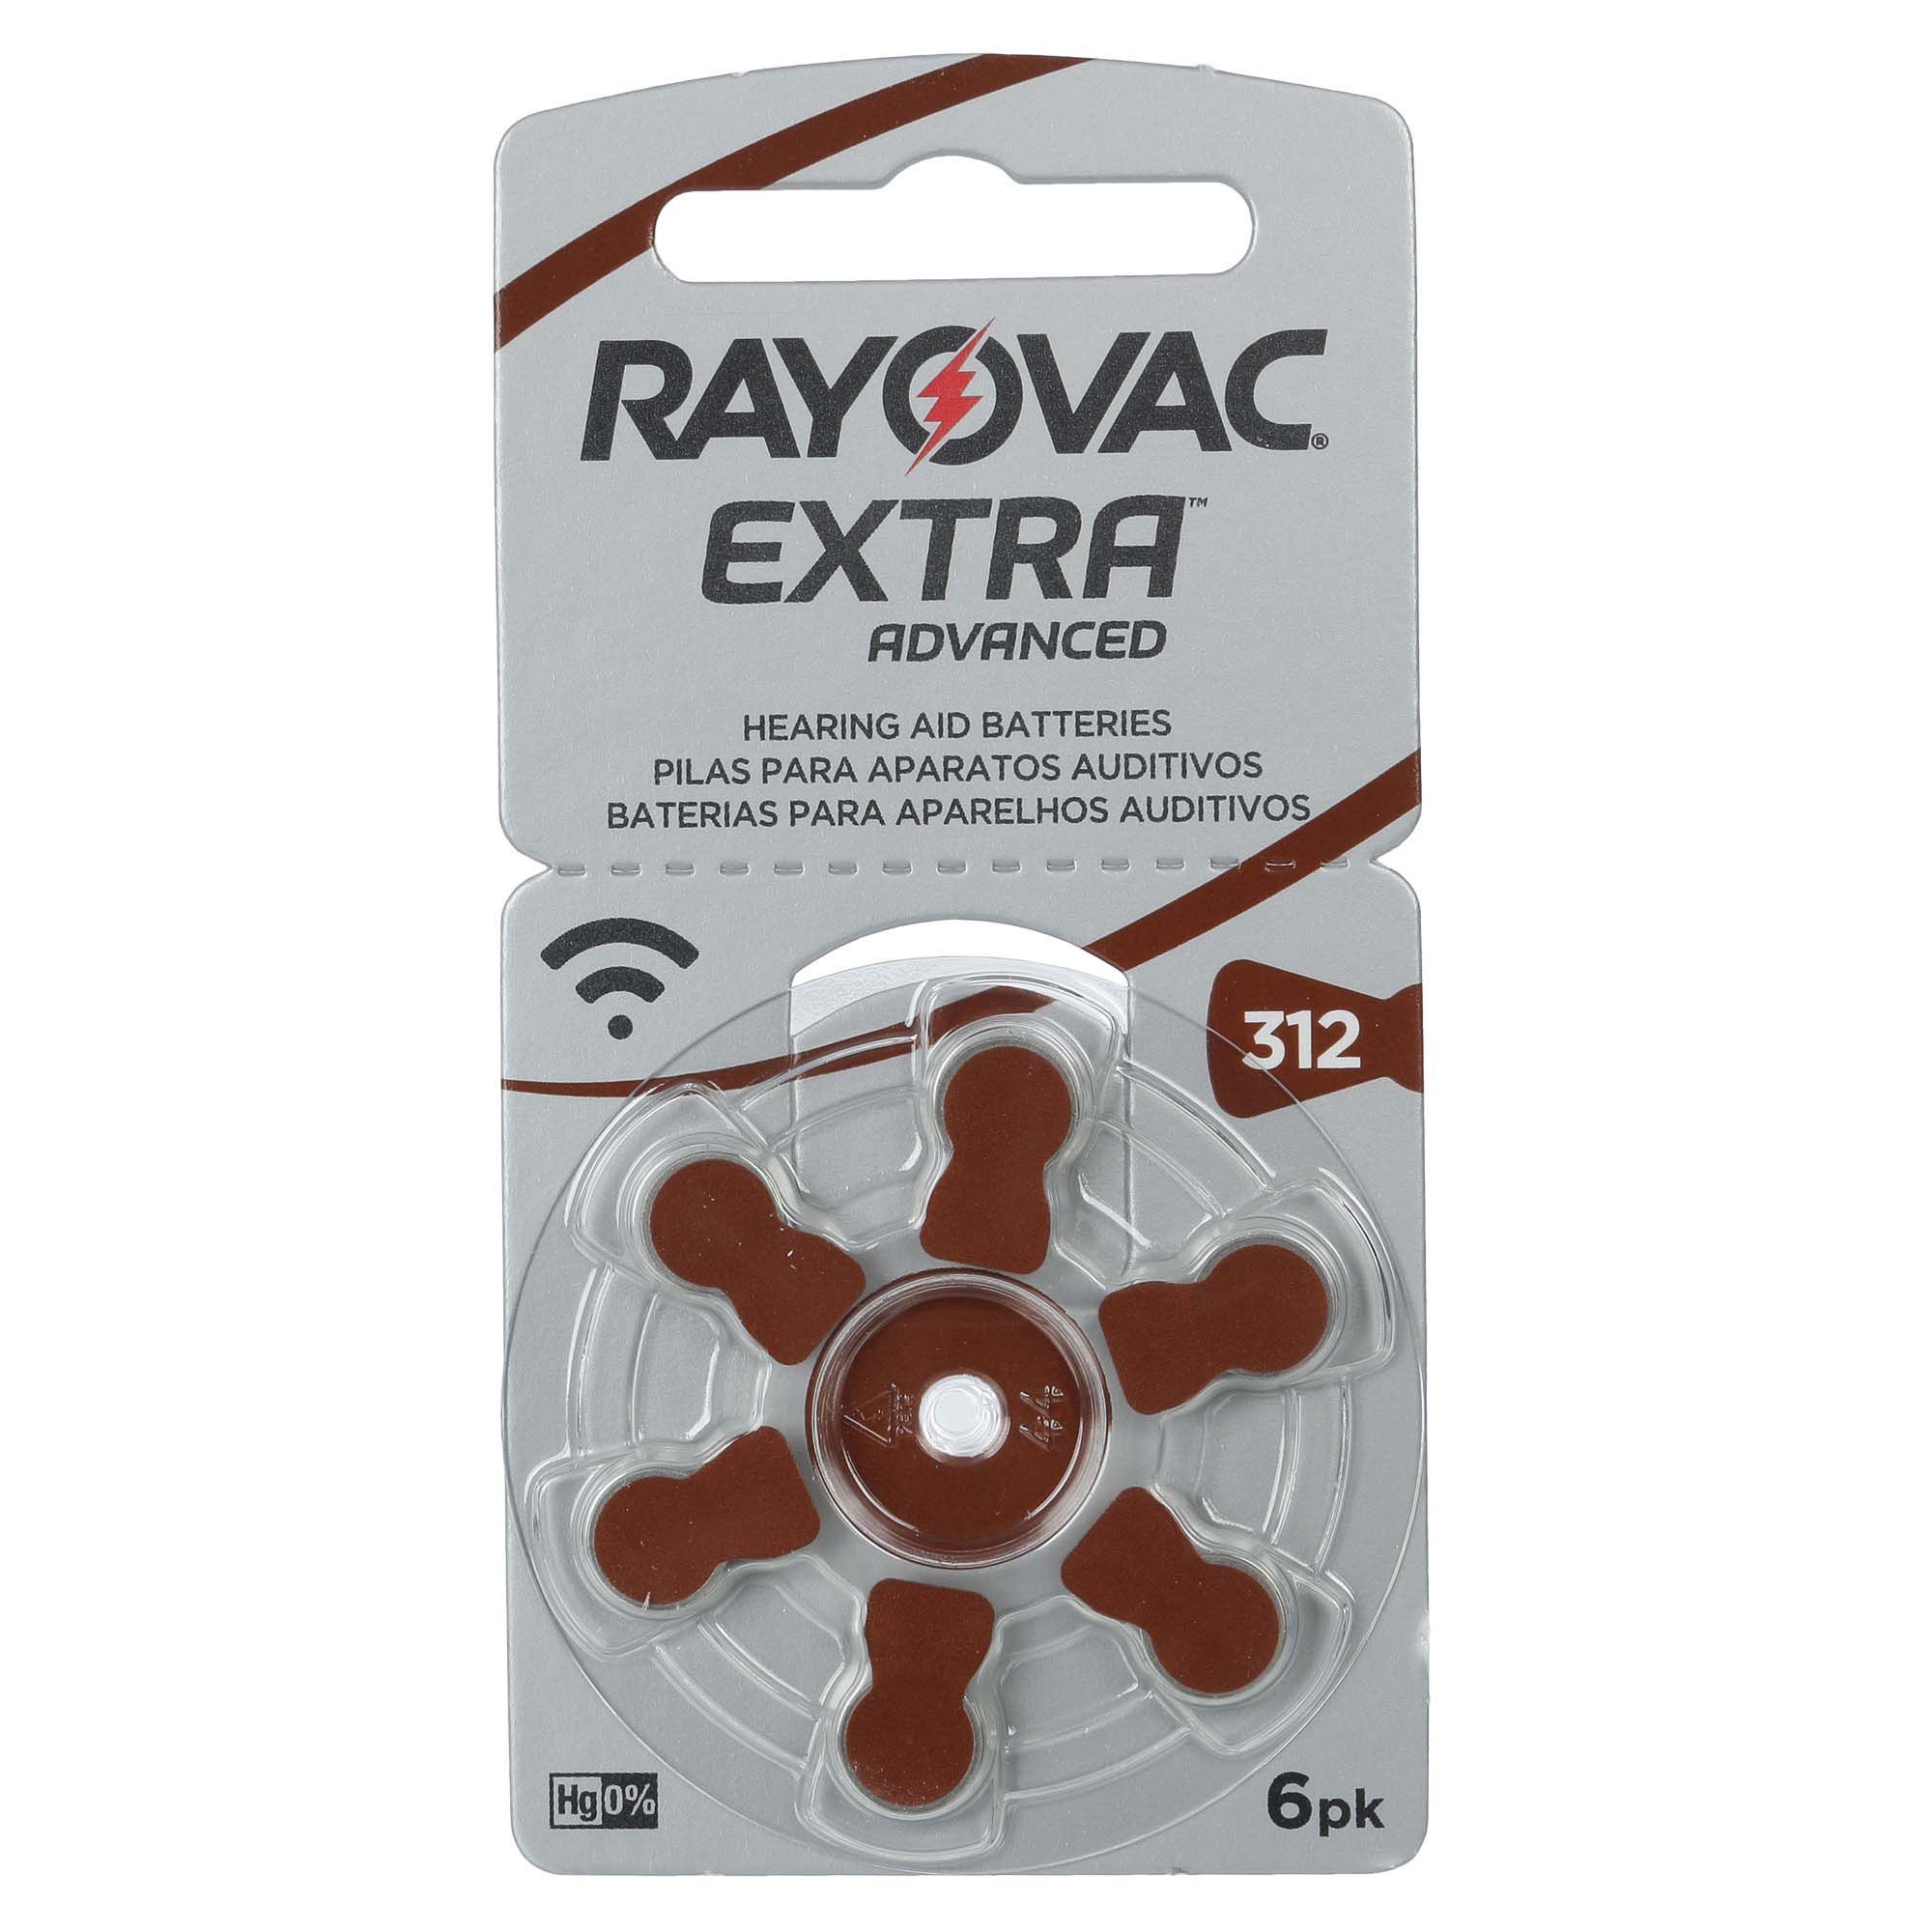 Rayovac 312 / PR41 - 10 Cartelas - 60 Baterias para Aparelho Auditivo  - SONORA